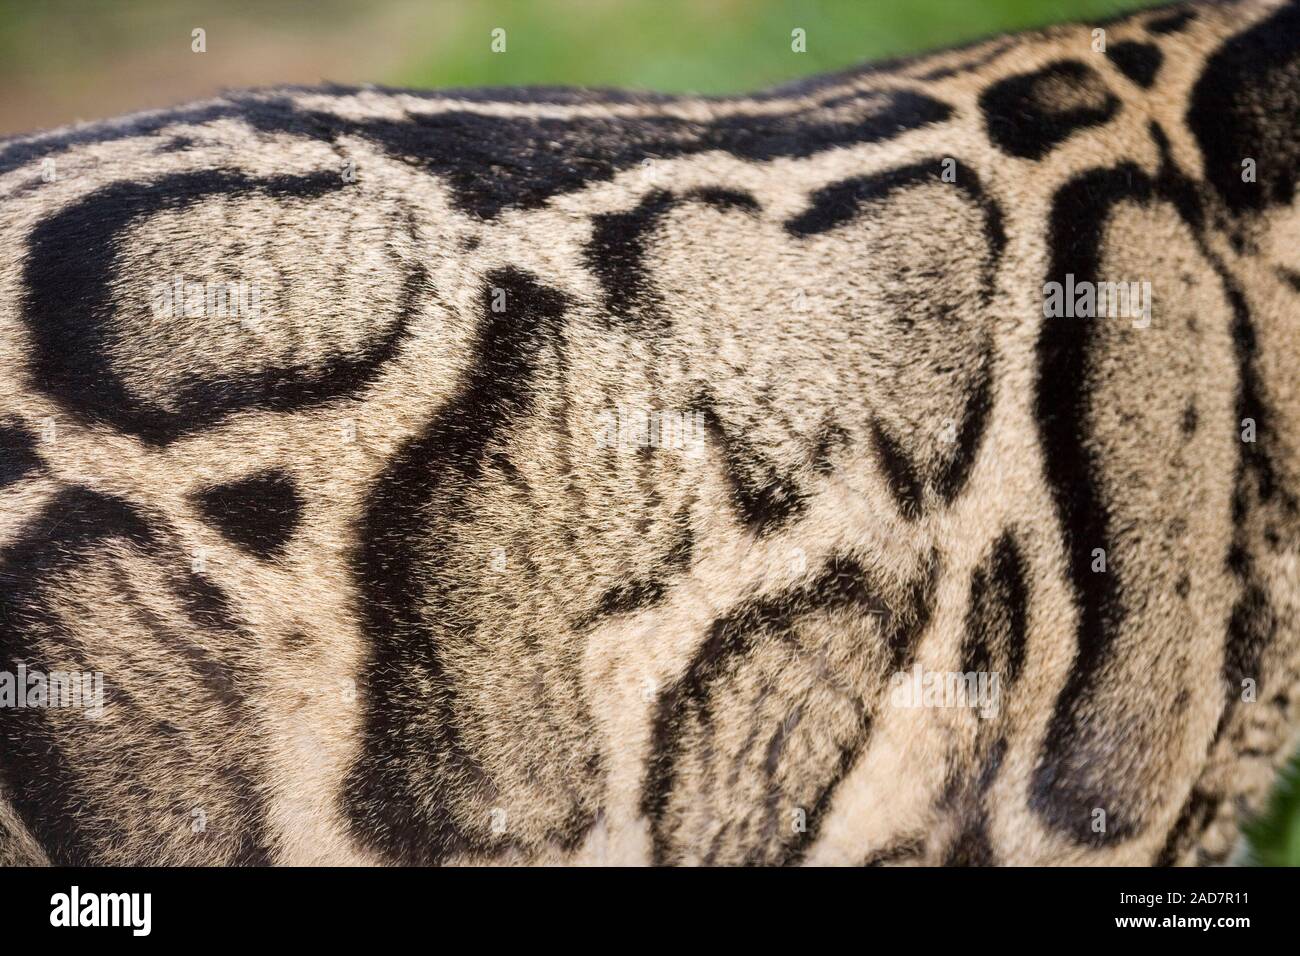 LÉOPARD TROUBLE néofelis nébuleuse motif Cryptique modèle de manteau aidant le camouflage parmi les arbres forestiers asiatiques, sur un animal vivant. Banque D'Images